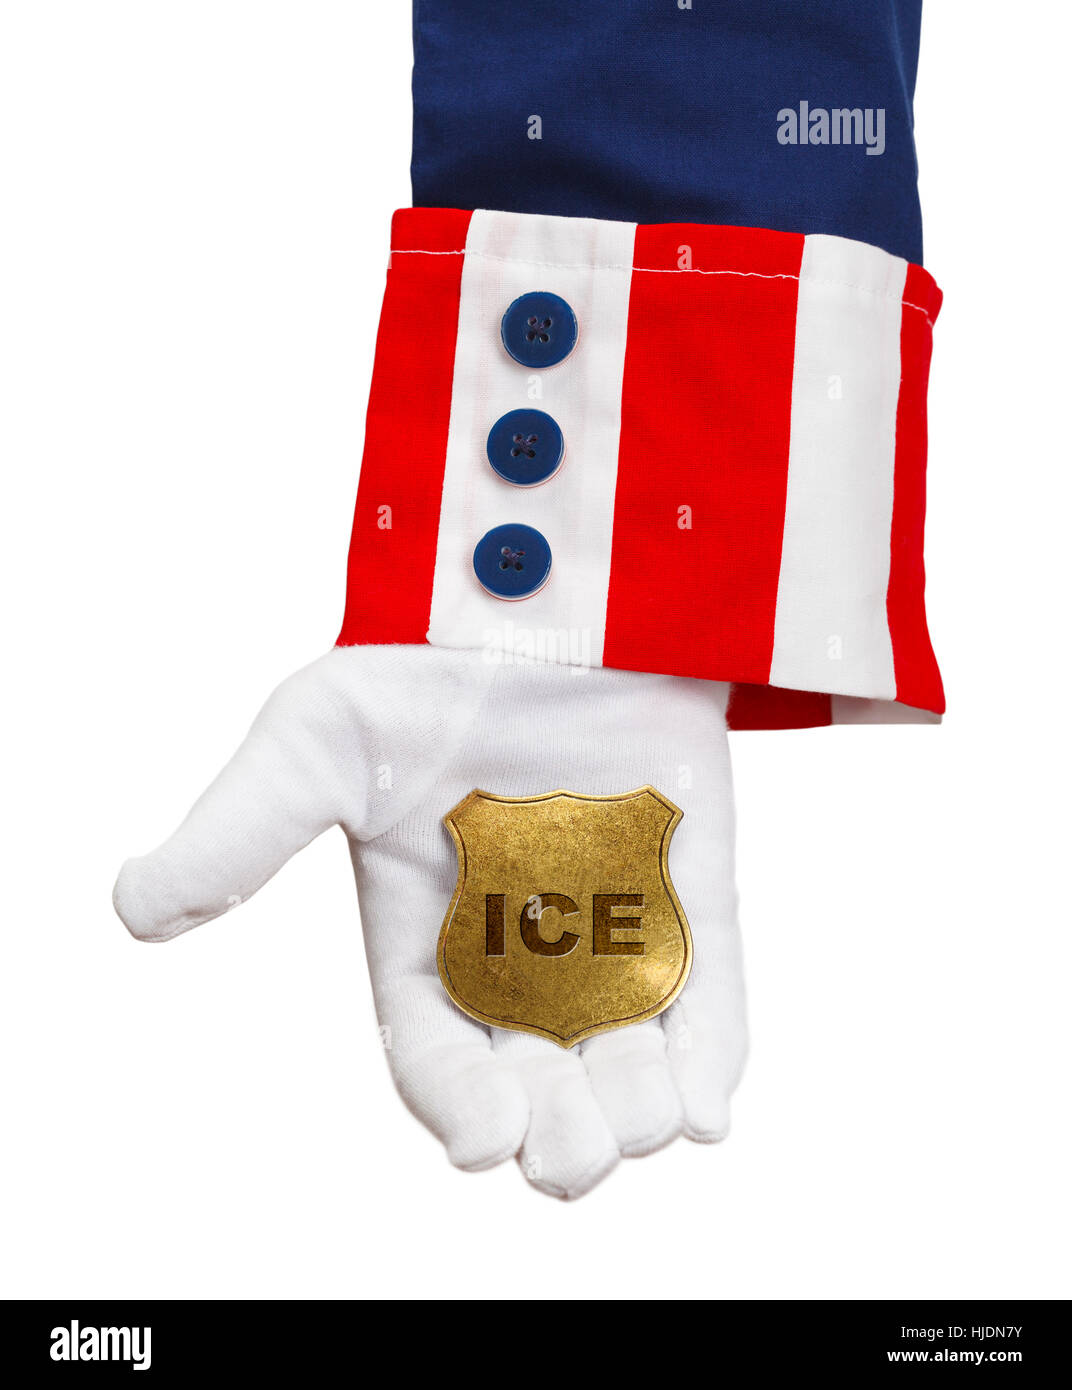 President Holding ICE Badge Isolated on White. Stock Photo